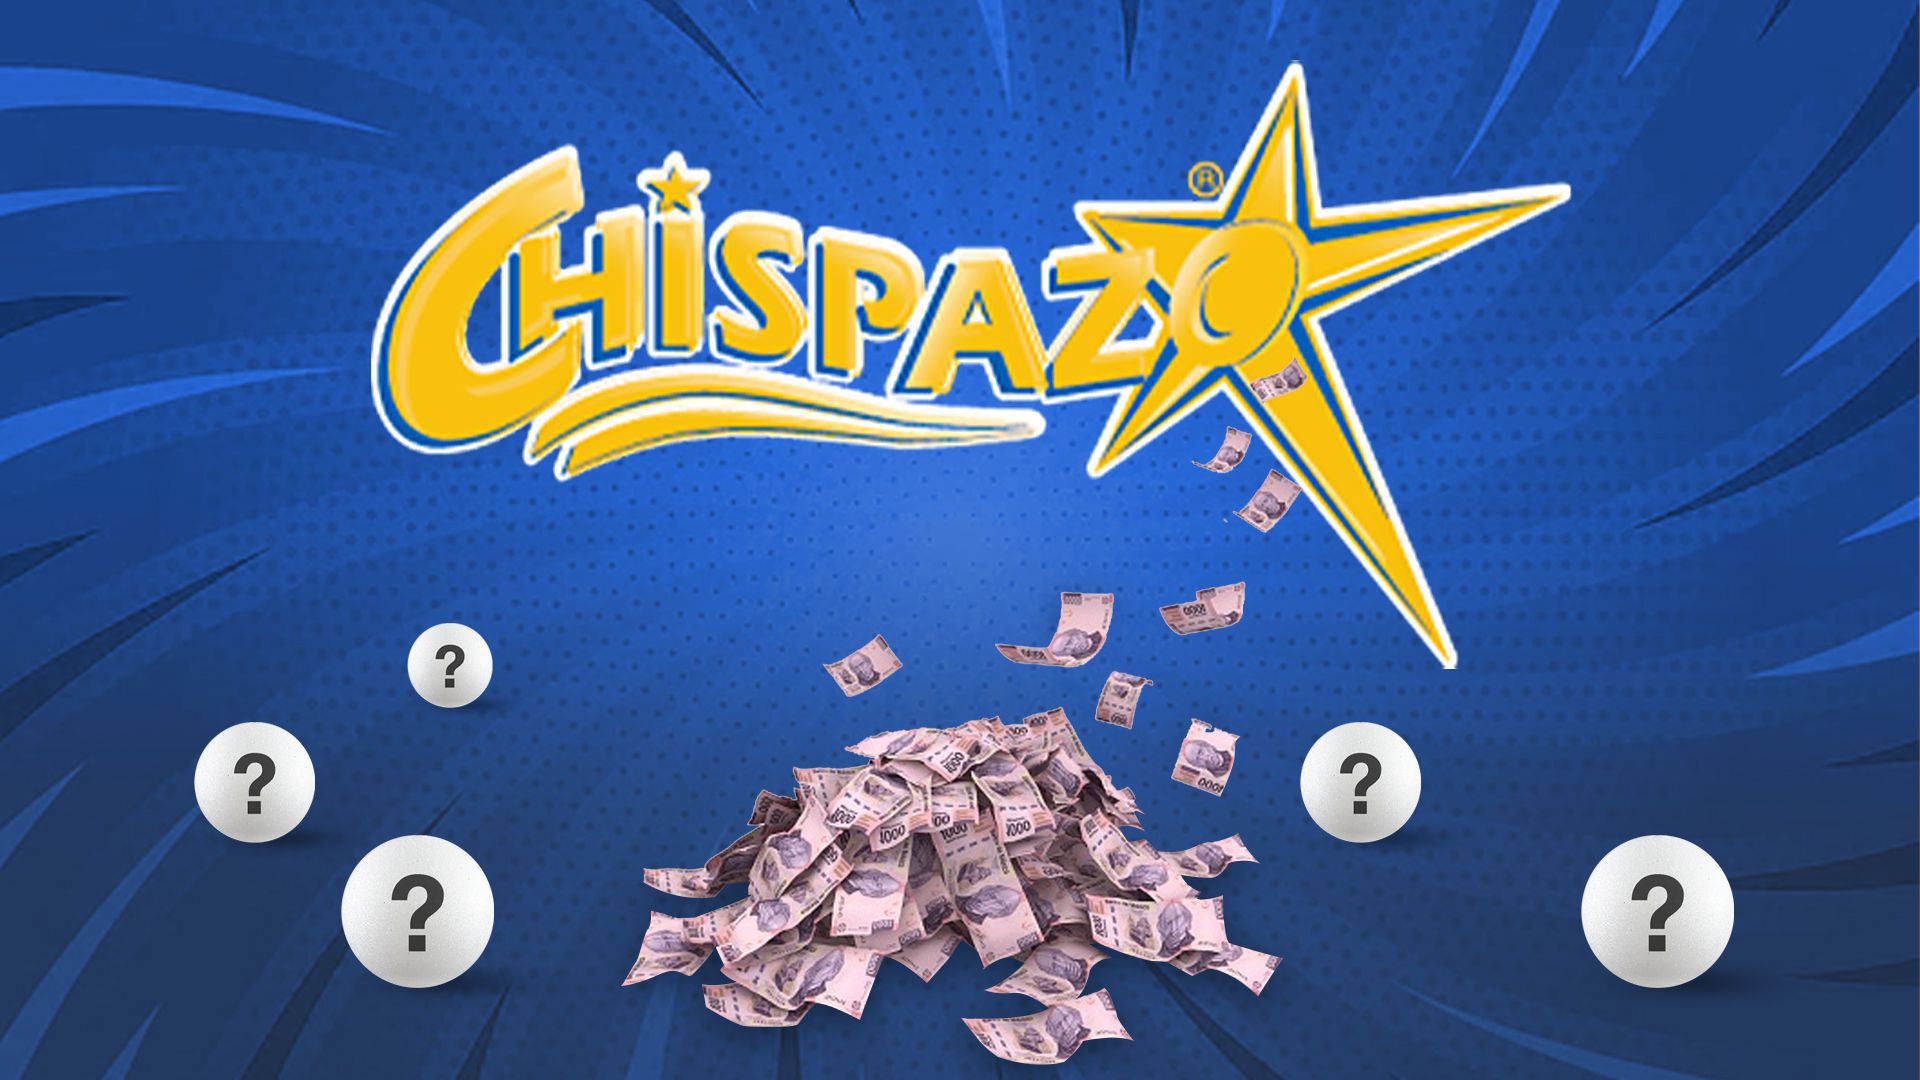 En el sorteo de hoy, Chipazo entregó $1,152,664.90 pesos (Infobae/Jovani Pérez)